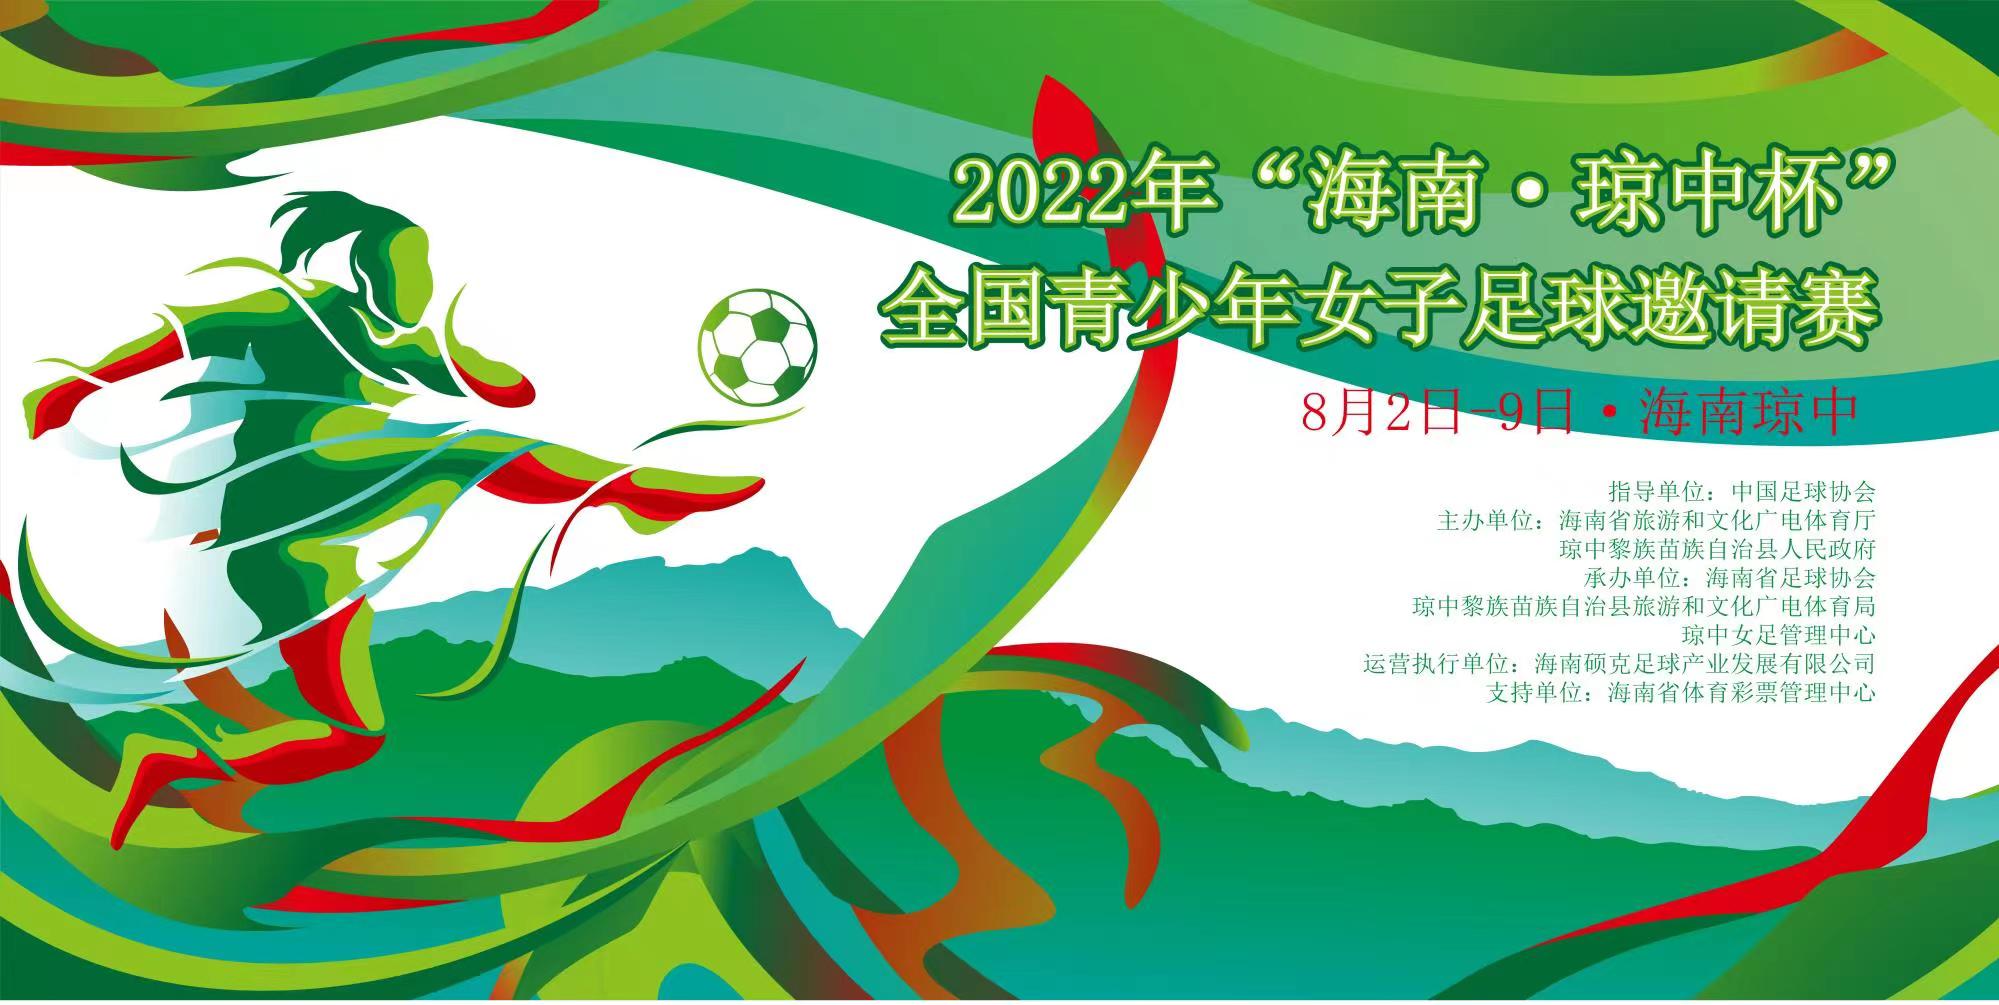 2022年“海南·琼中杯”全国青少年女子足球邀请赛8月3日